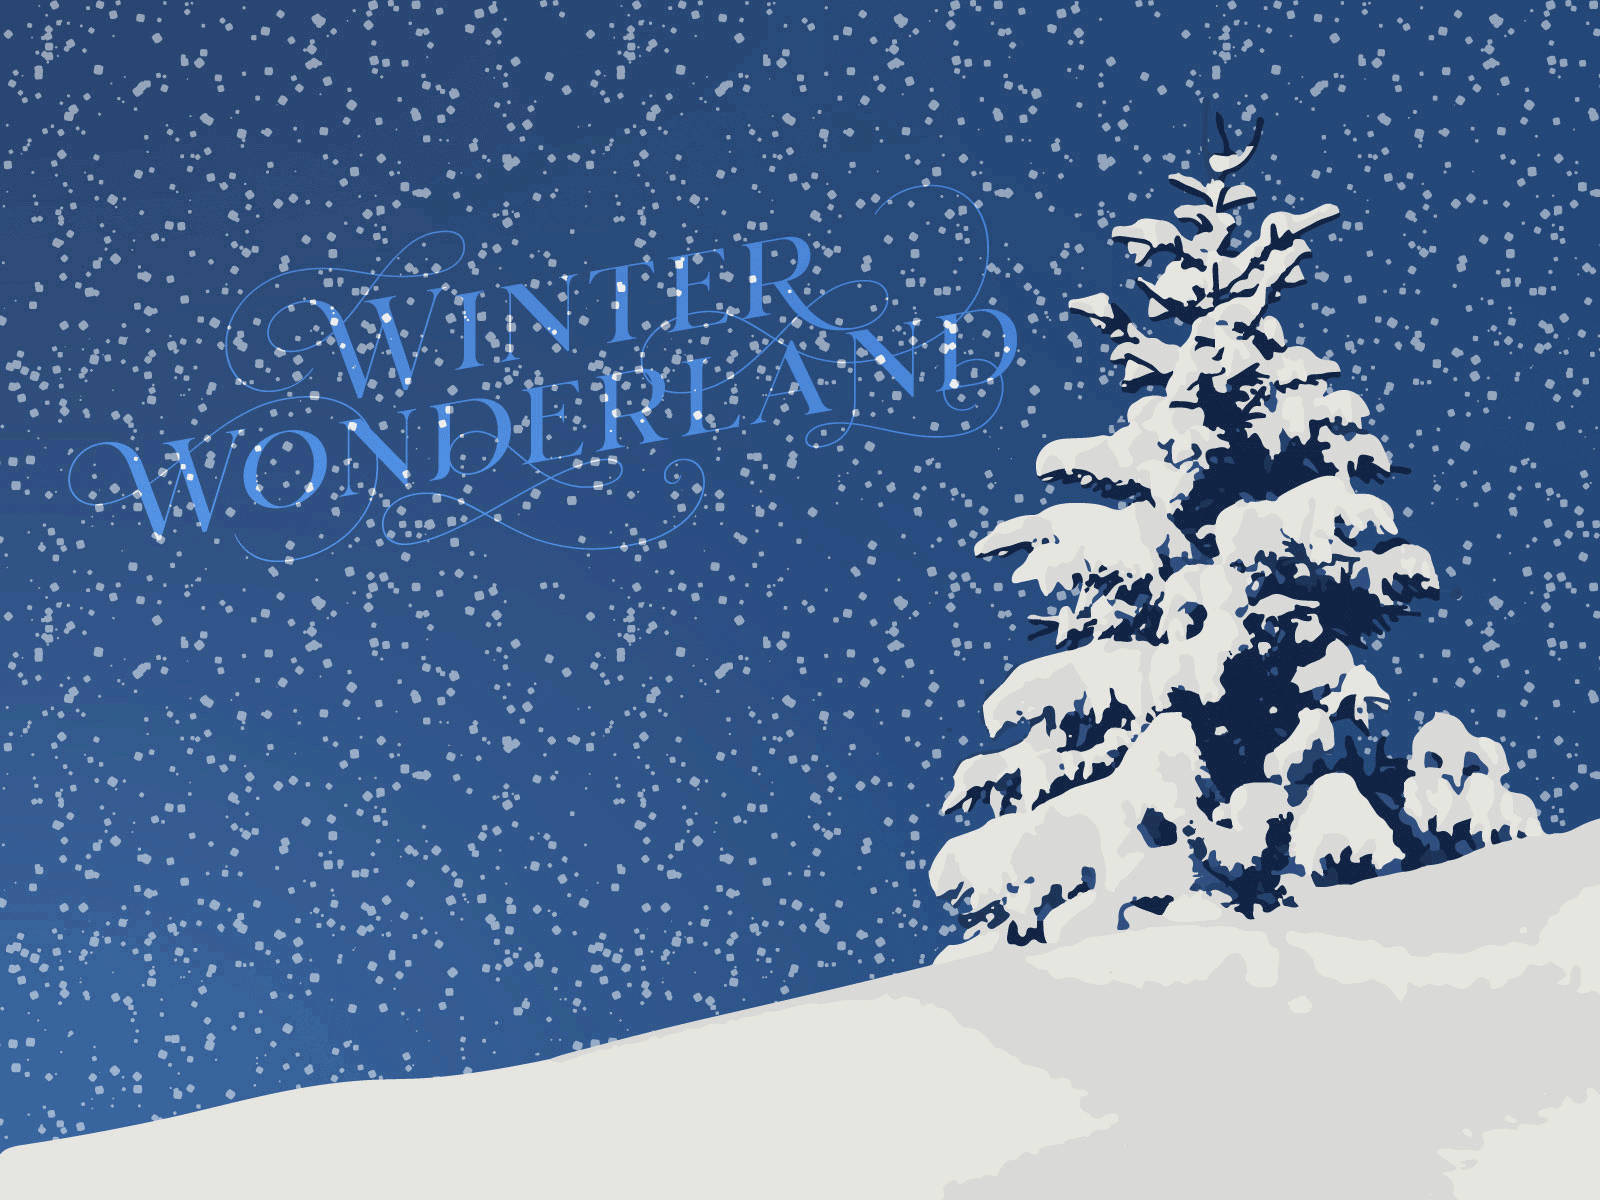 Winter Wonderland | Weekly Warm-up